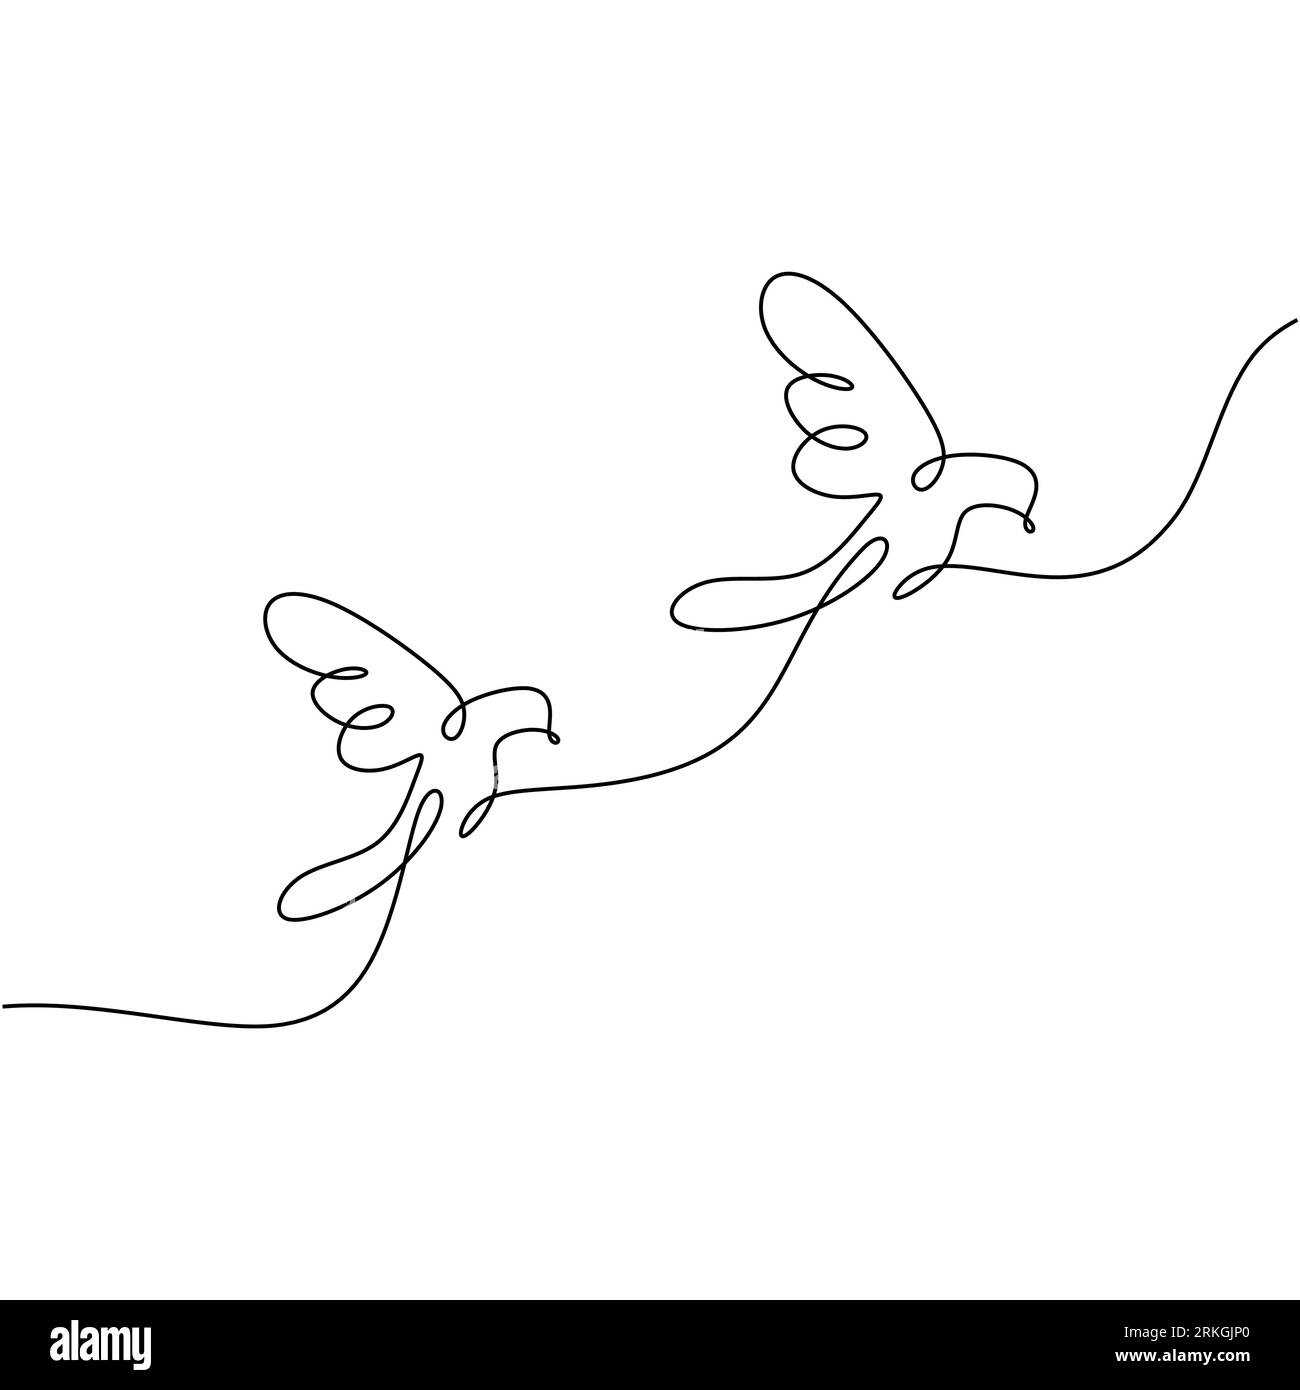 Vogelpaar durchgehende einzeilige Zeichnung Minimalismus Tierzeichnung Hand gezeichnet. Durchgehende einzeilige Zeichnung. Ein paar Vögel. Taube oder Taube von Hand gezeichnet Stock Vektor